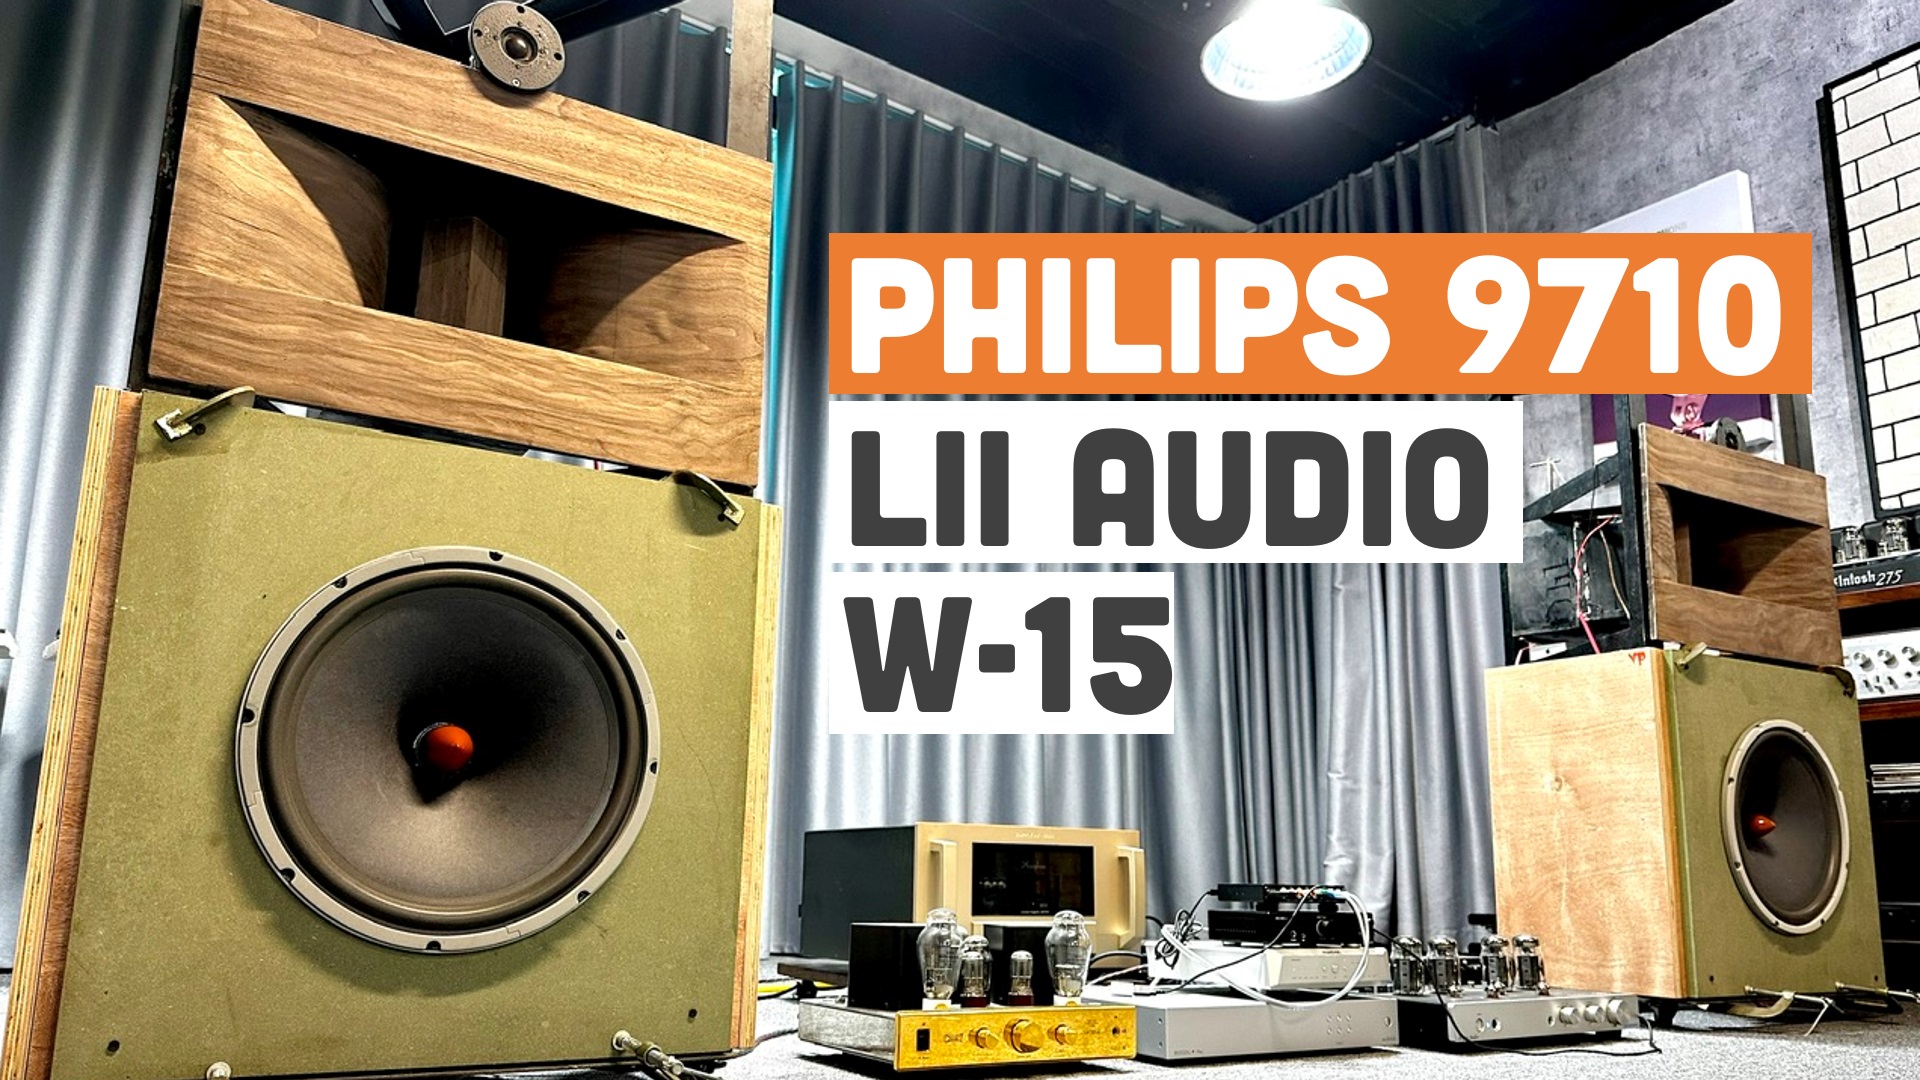 Ghép toàn dải Philips 9710 trong họng gỗ với loa bass 40cm Lii Audio W-15 chơi ván hở